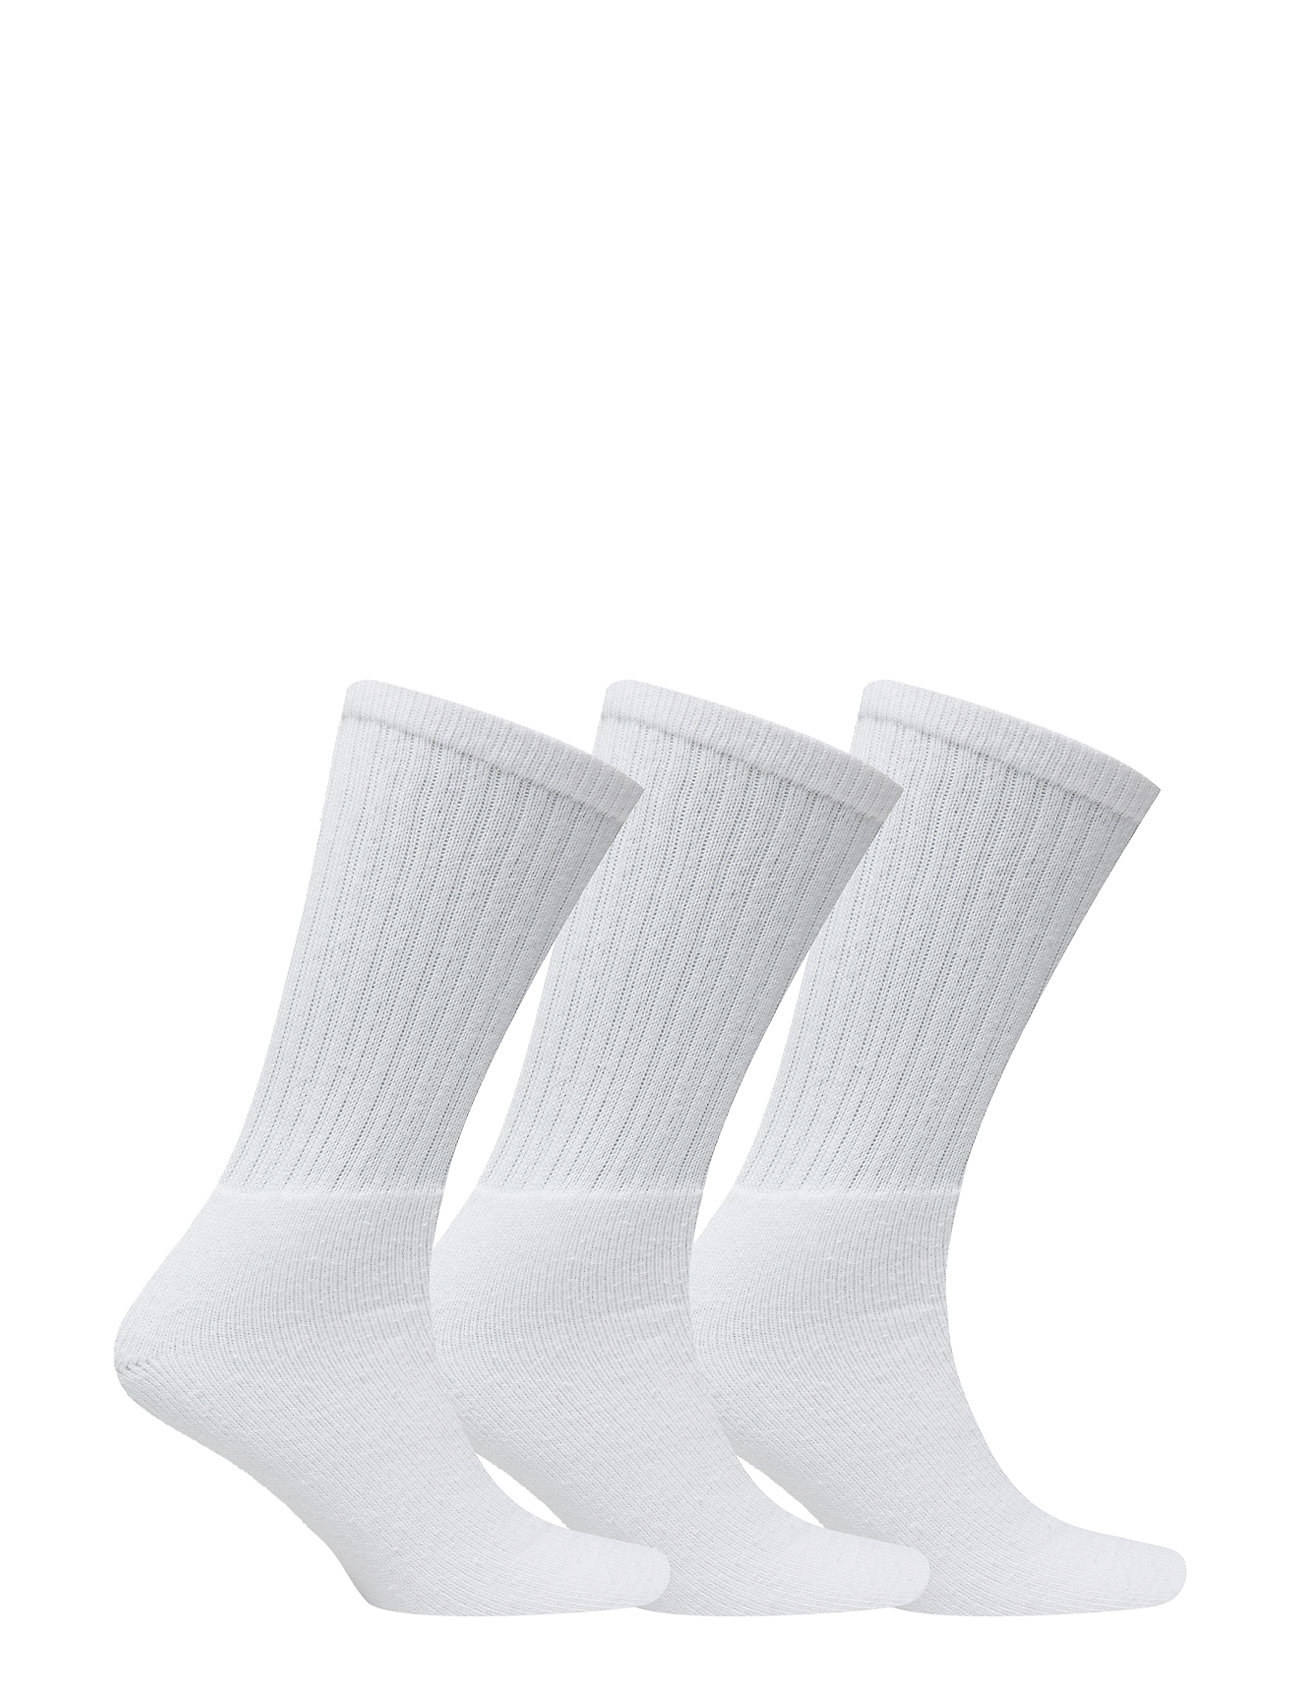 Claudio - Claudio socks tennis 3-pack - lowest prices - white - 1